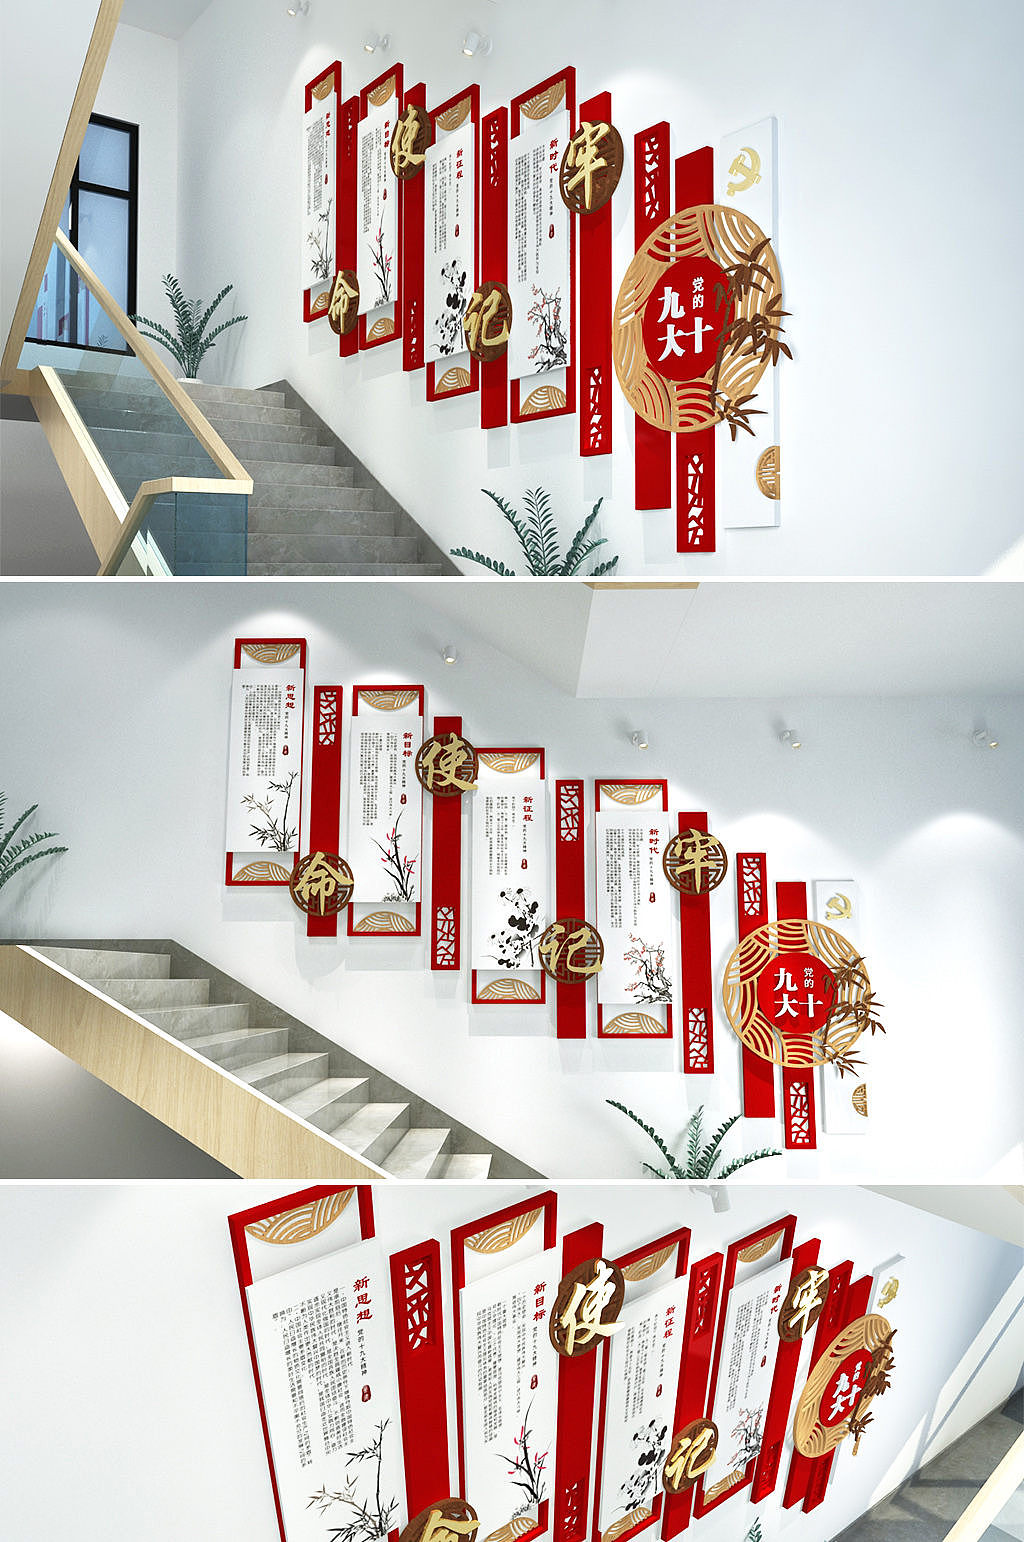 2013中式风格别墅室内实木楼梯护栏装修效果图 – 设计本装修效果图